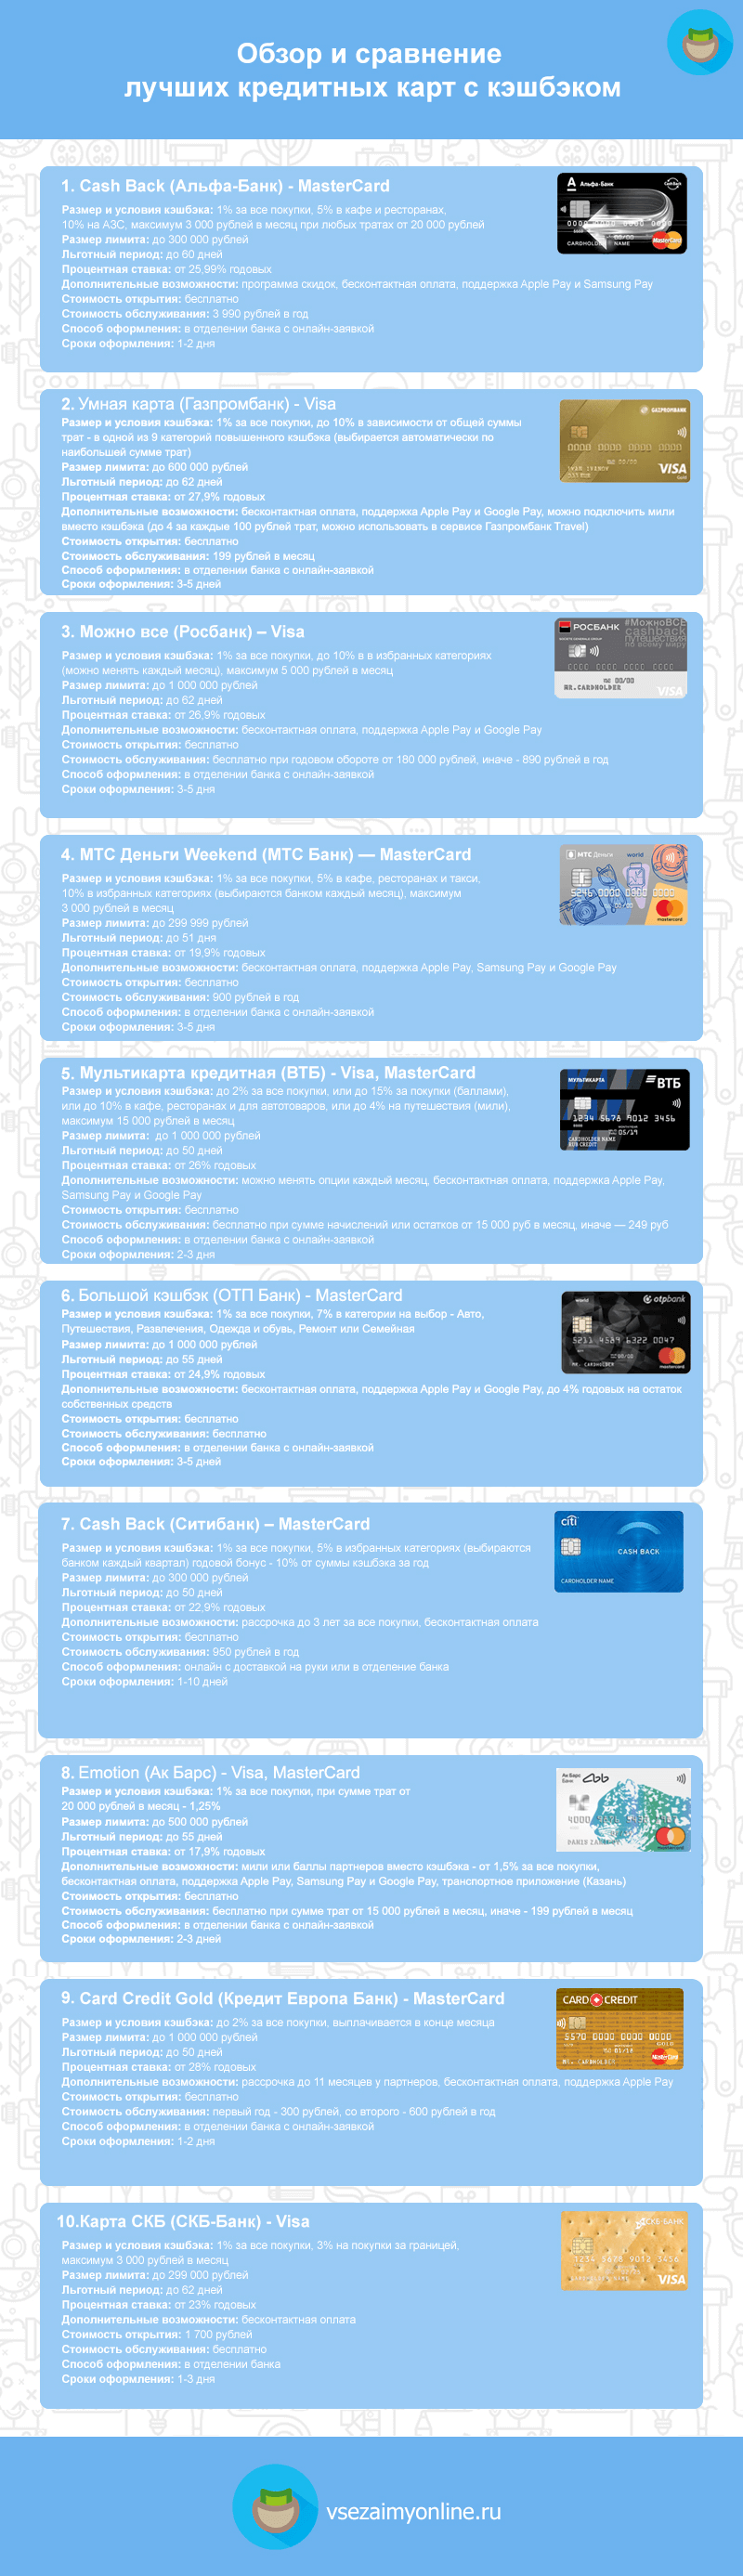 оформить кредитную карту альфа банк онлайн с моментальным решением екатеринбург